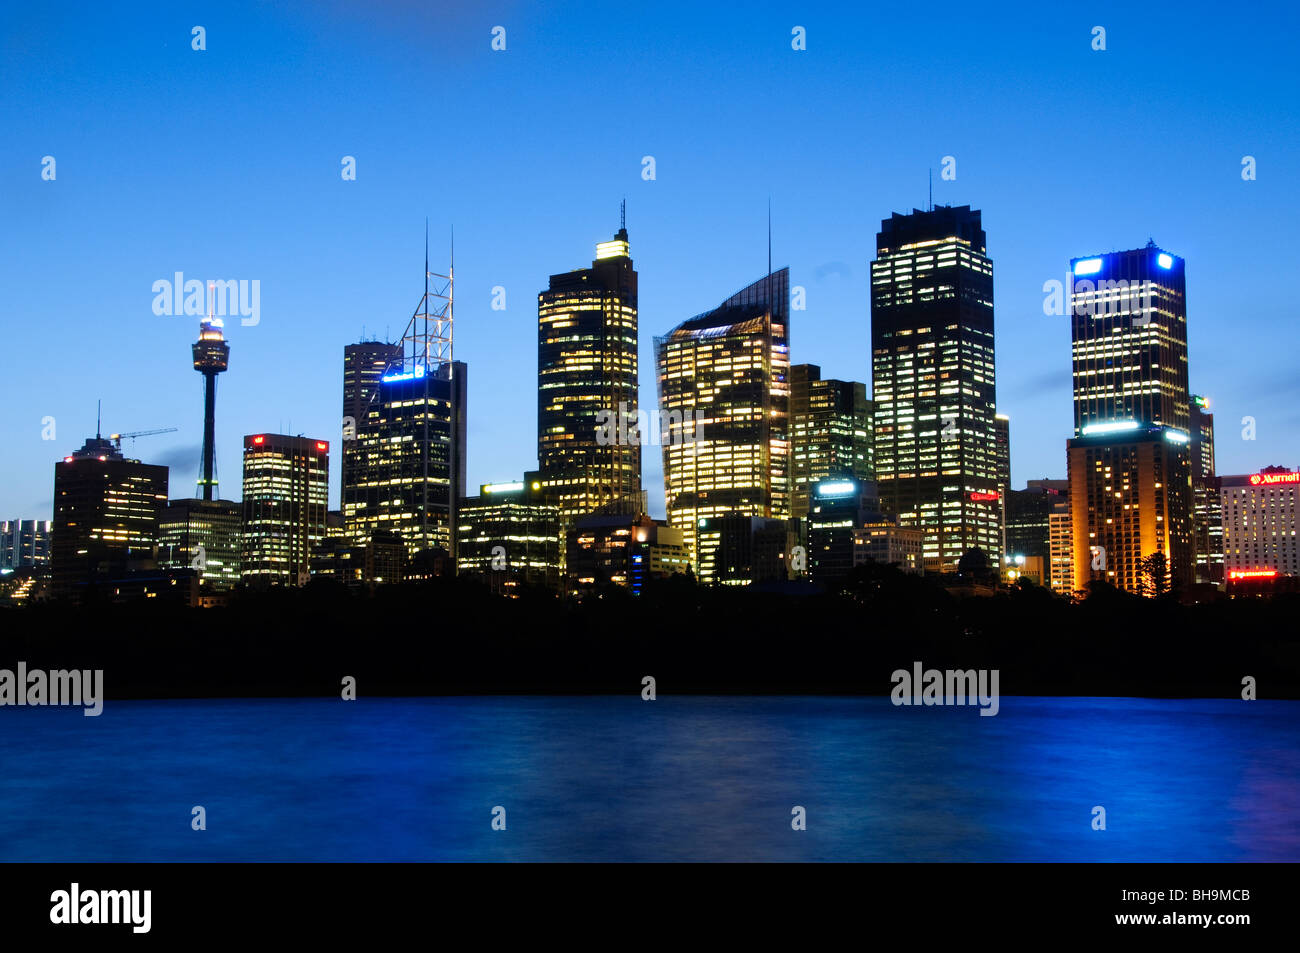 SYDNEY, Australien - Sydney, Australien - Dämmerung Blick auf die Skyline von Sydney wie von Frau von Macquarie aus gesehen Stockfoto